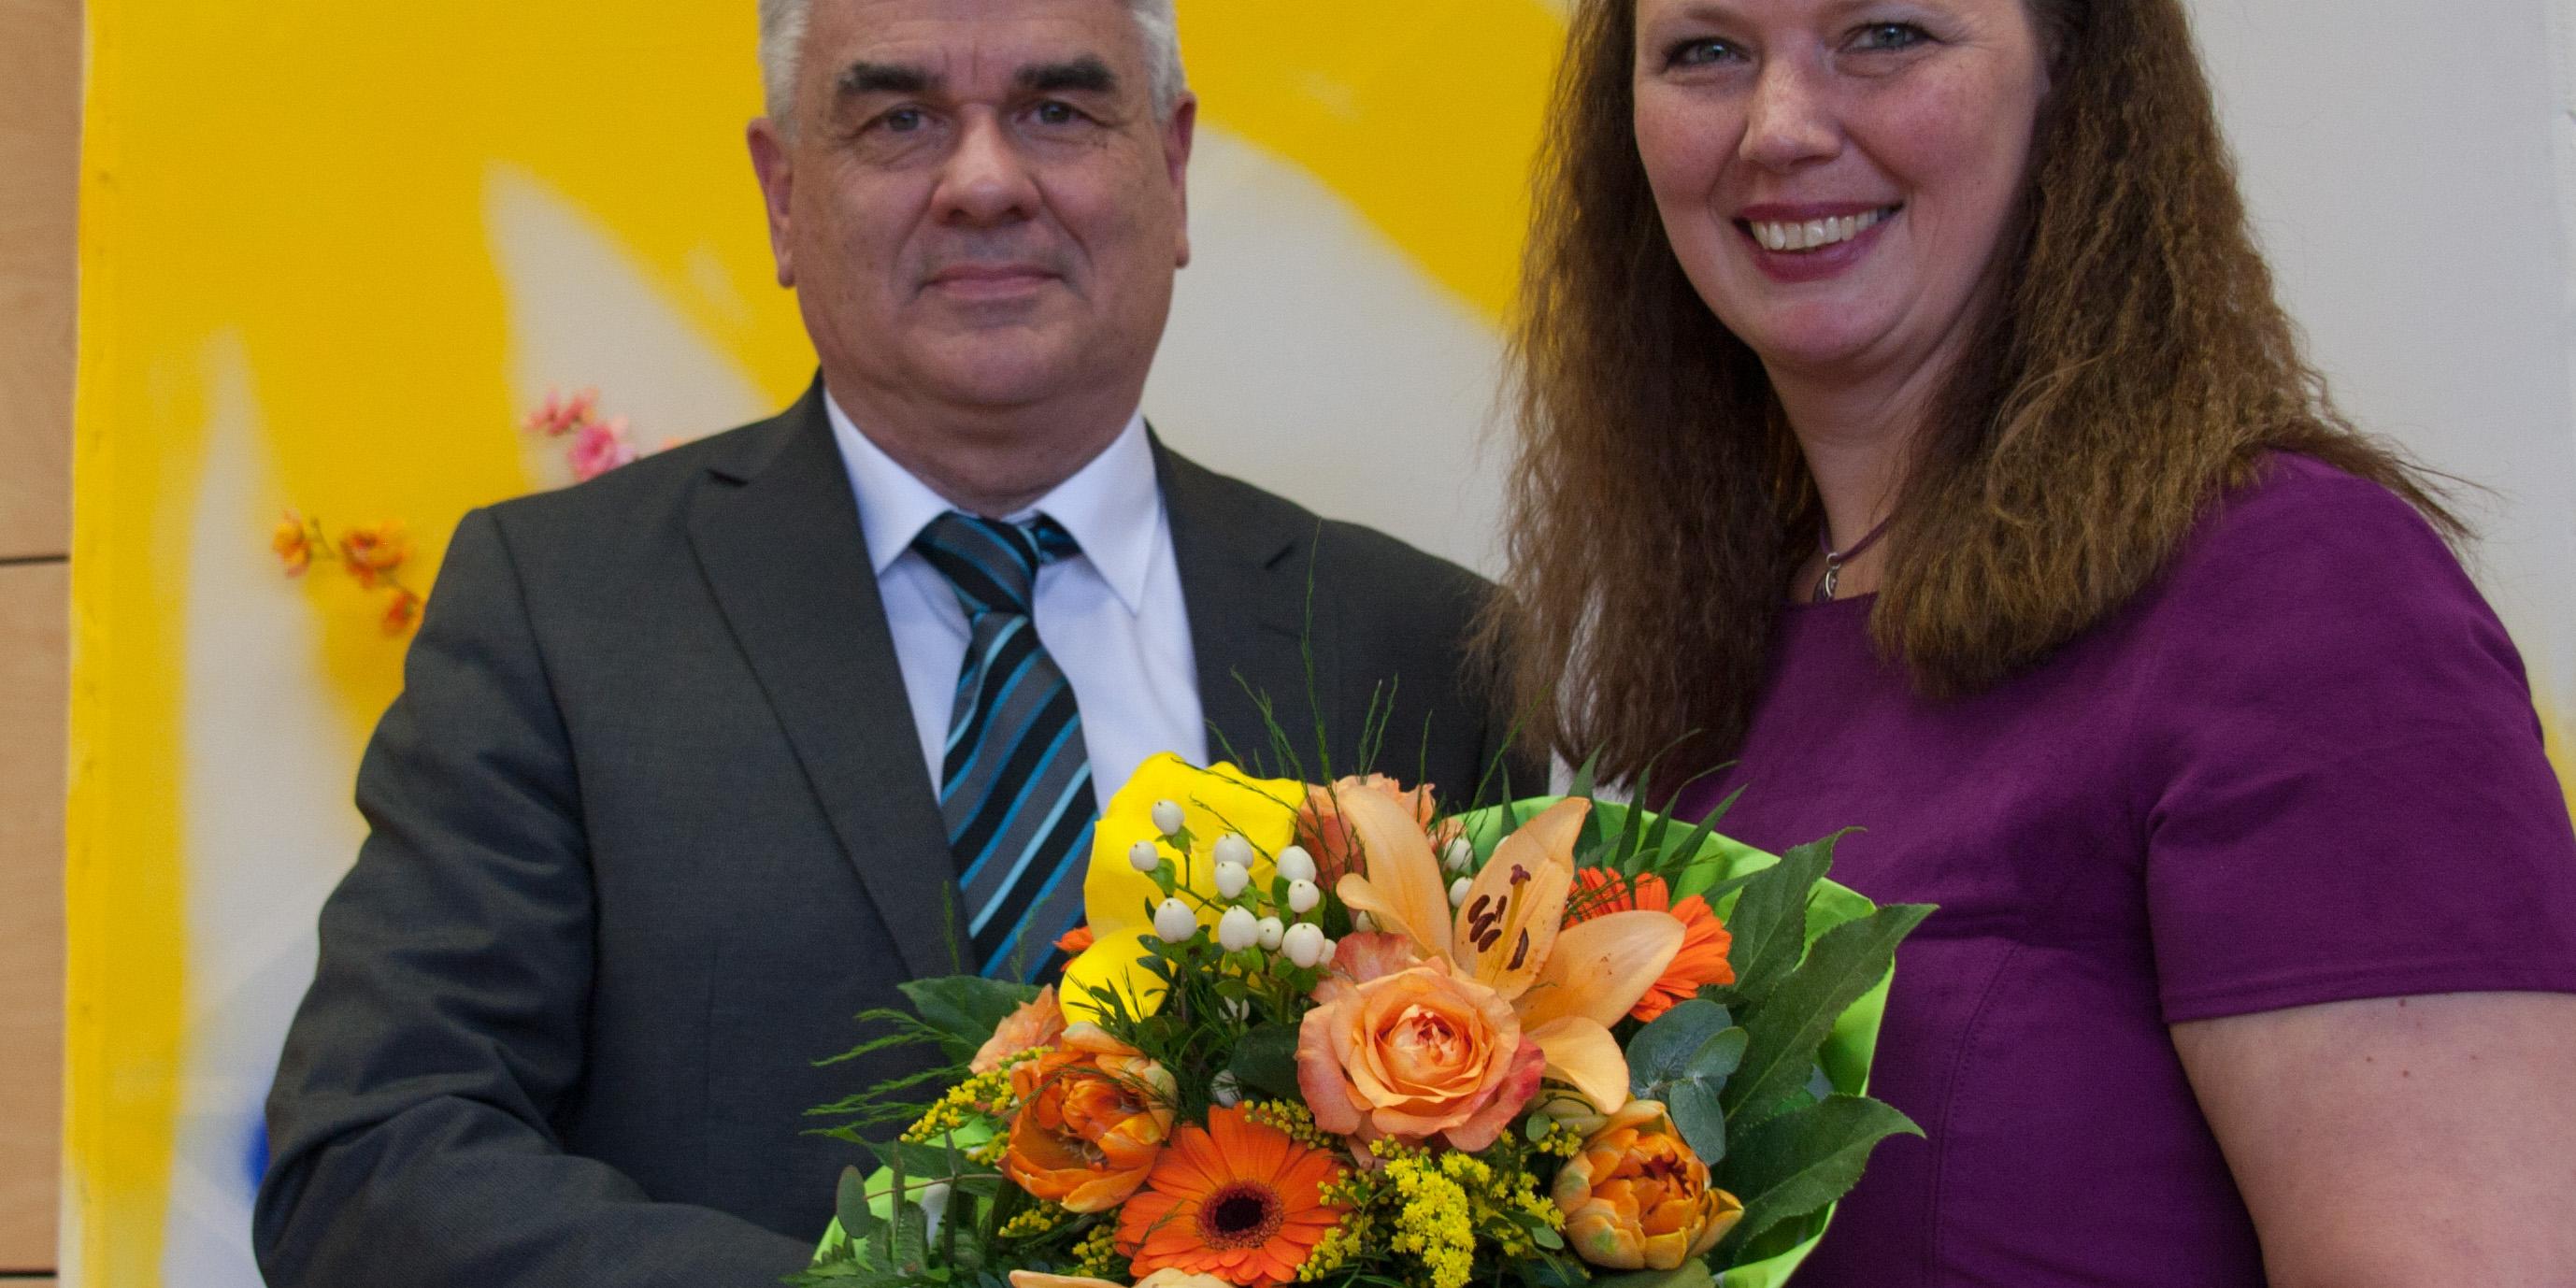 Albrecht Adam, Leiter der Abteilung Schule und Hochschule im Bischöflichen Generalvikariat, begrüßt Kerstin Ollmann als neue Schulleiterin.